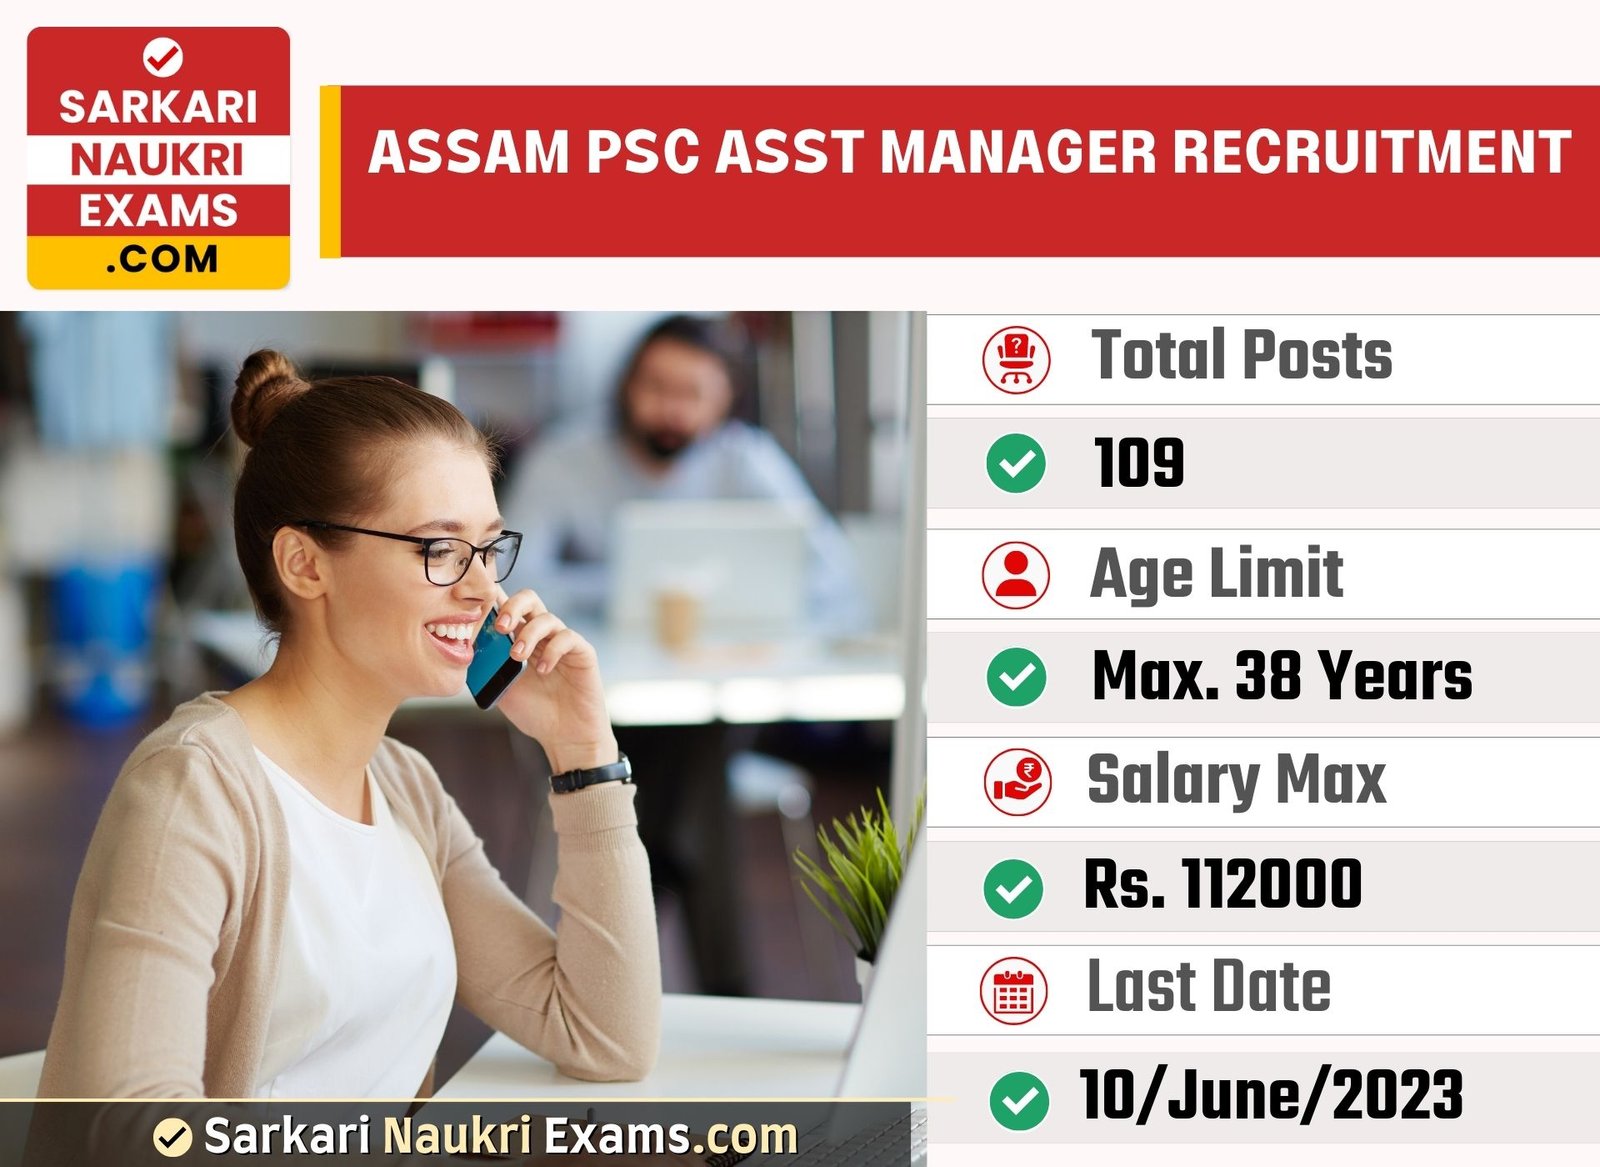 Assam PSC Asst Manager Recruitment Form 2023 | Last Date 10 June